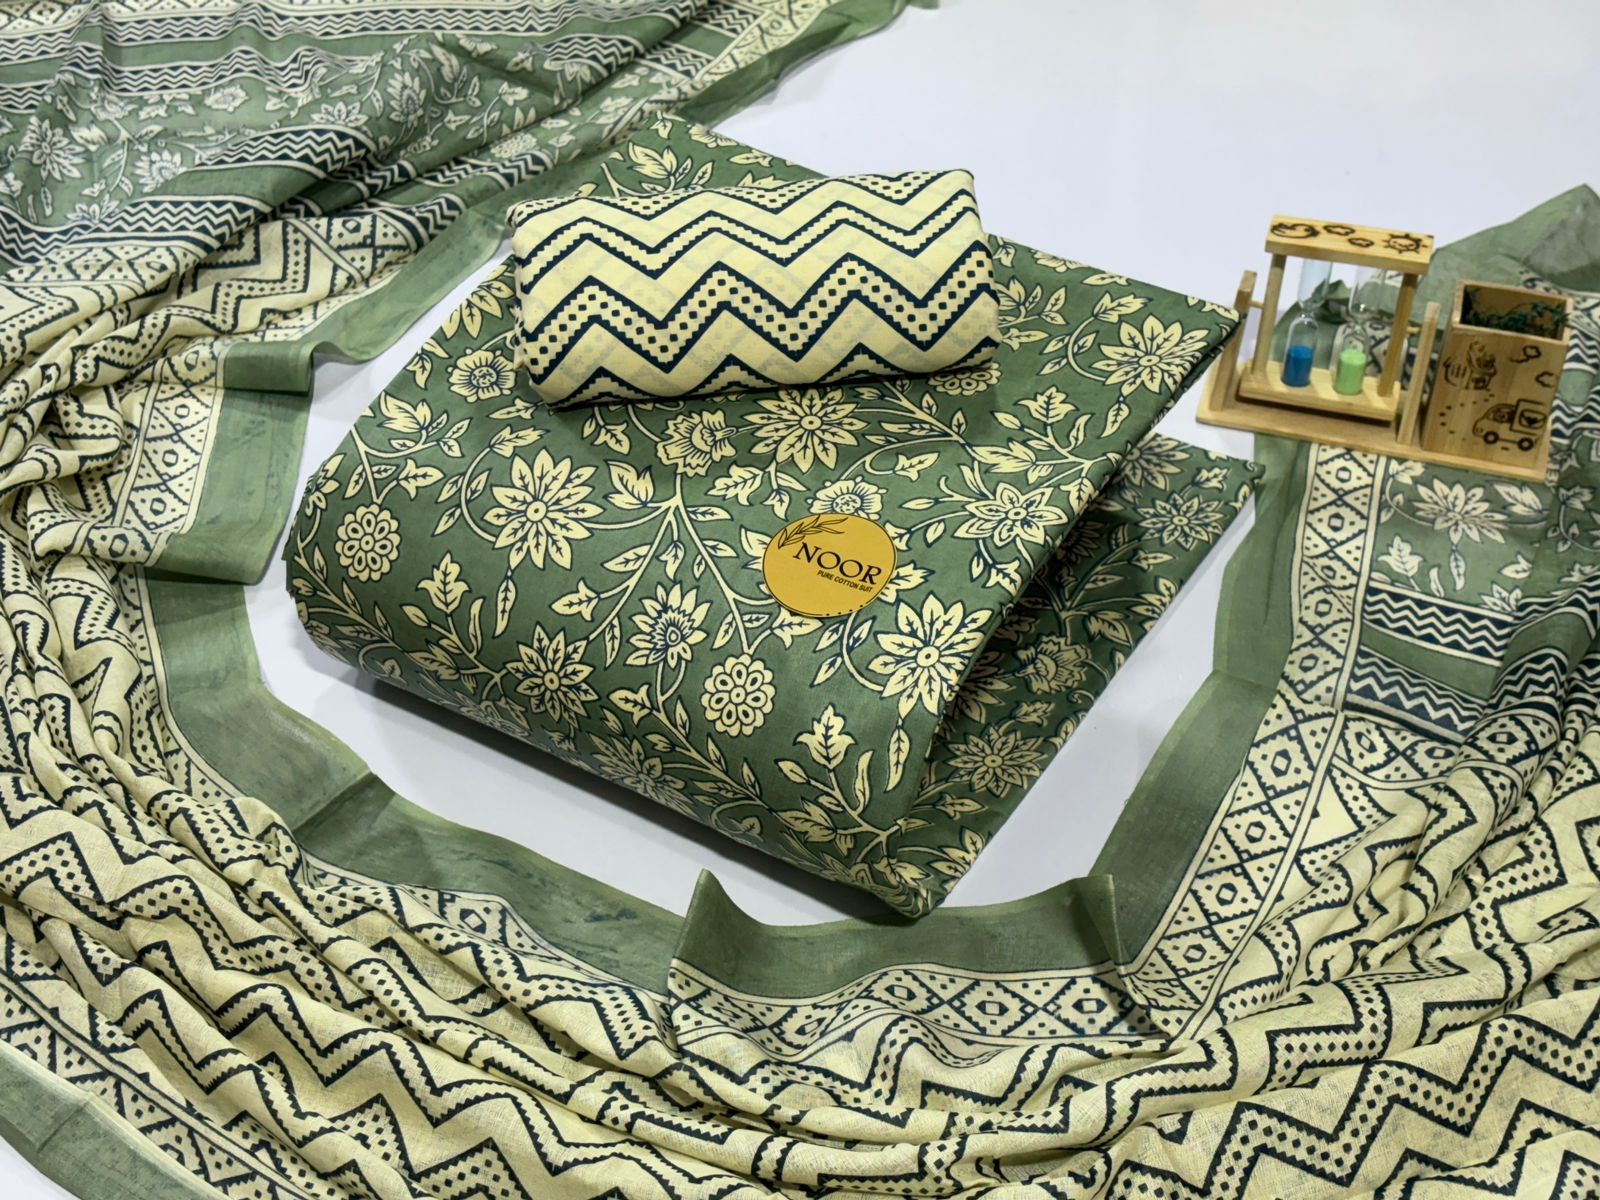 Jilani Textile Noor Vol 3 Cotton Printed Dress Material Manufacturer In Jetpur